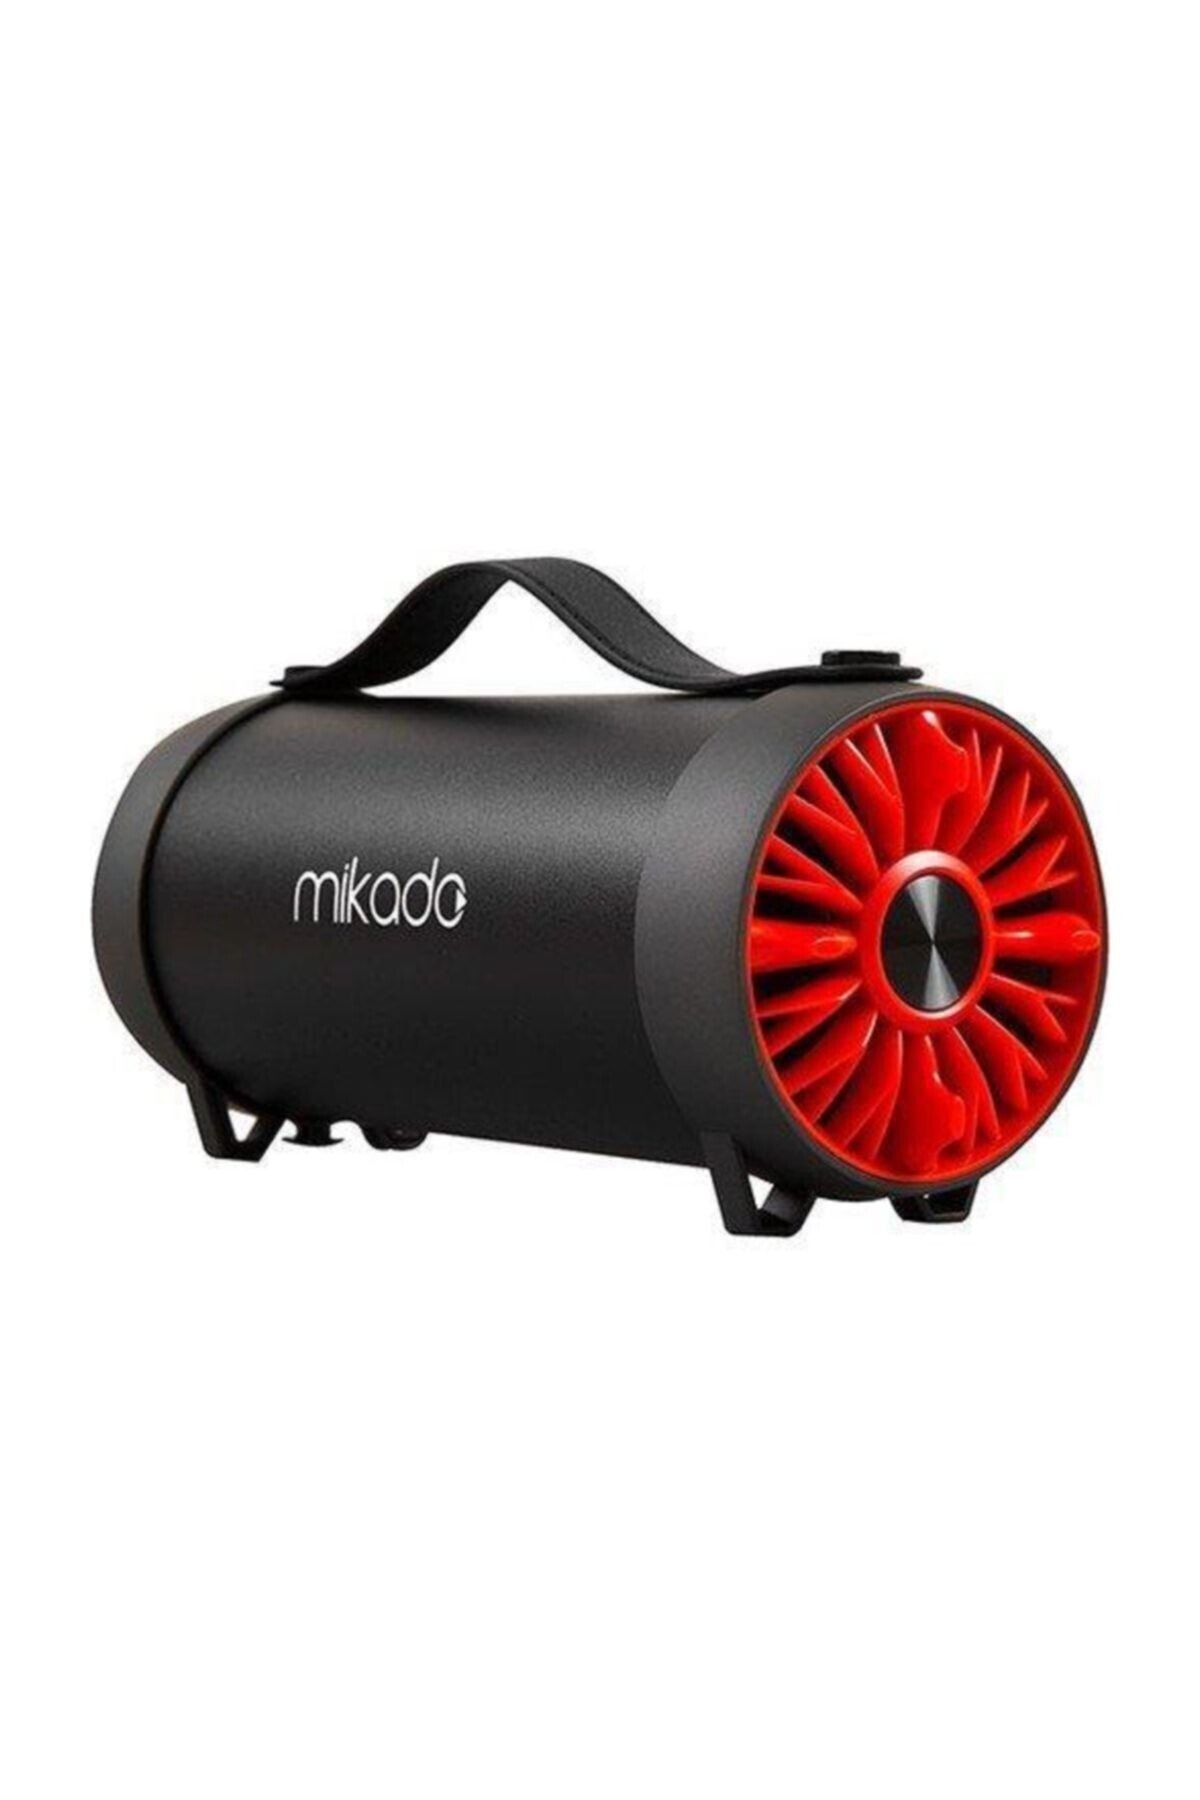 Mikado Md-54bt Siyah-kırmızı Usb Bluetooth Hoparlör 3w 10